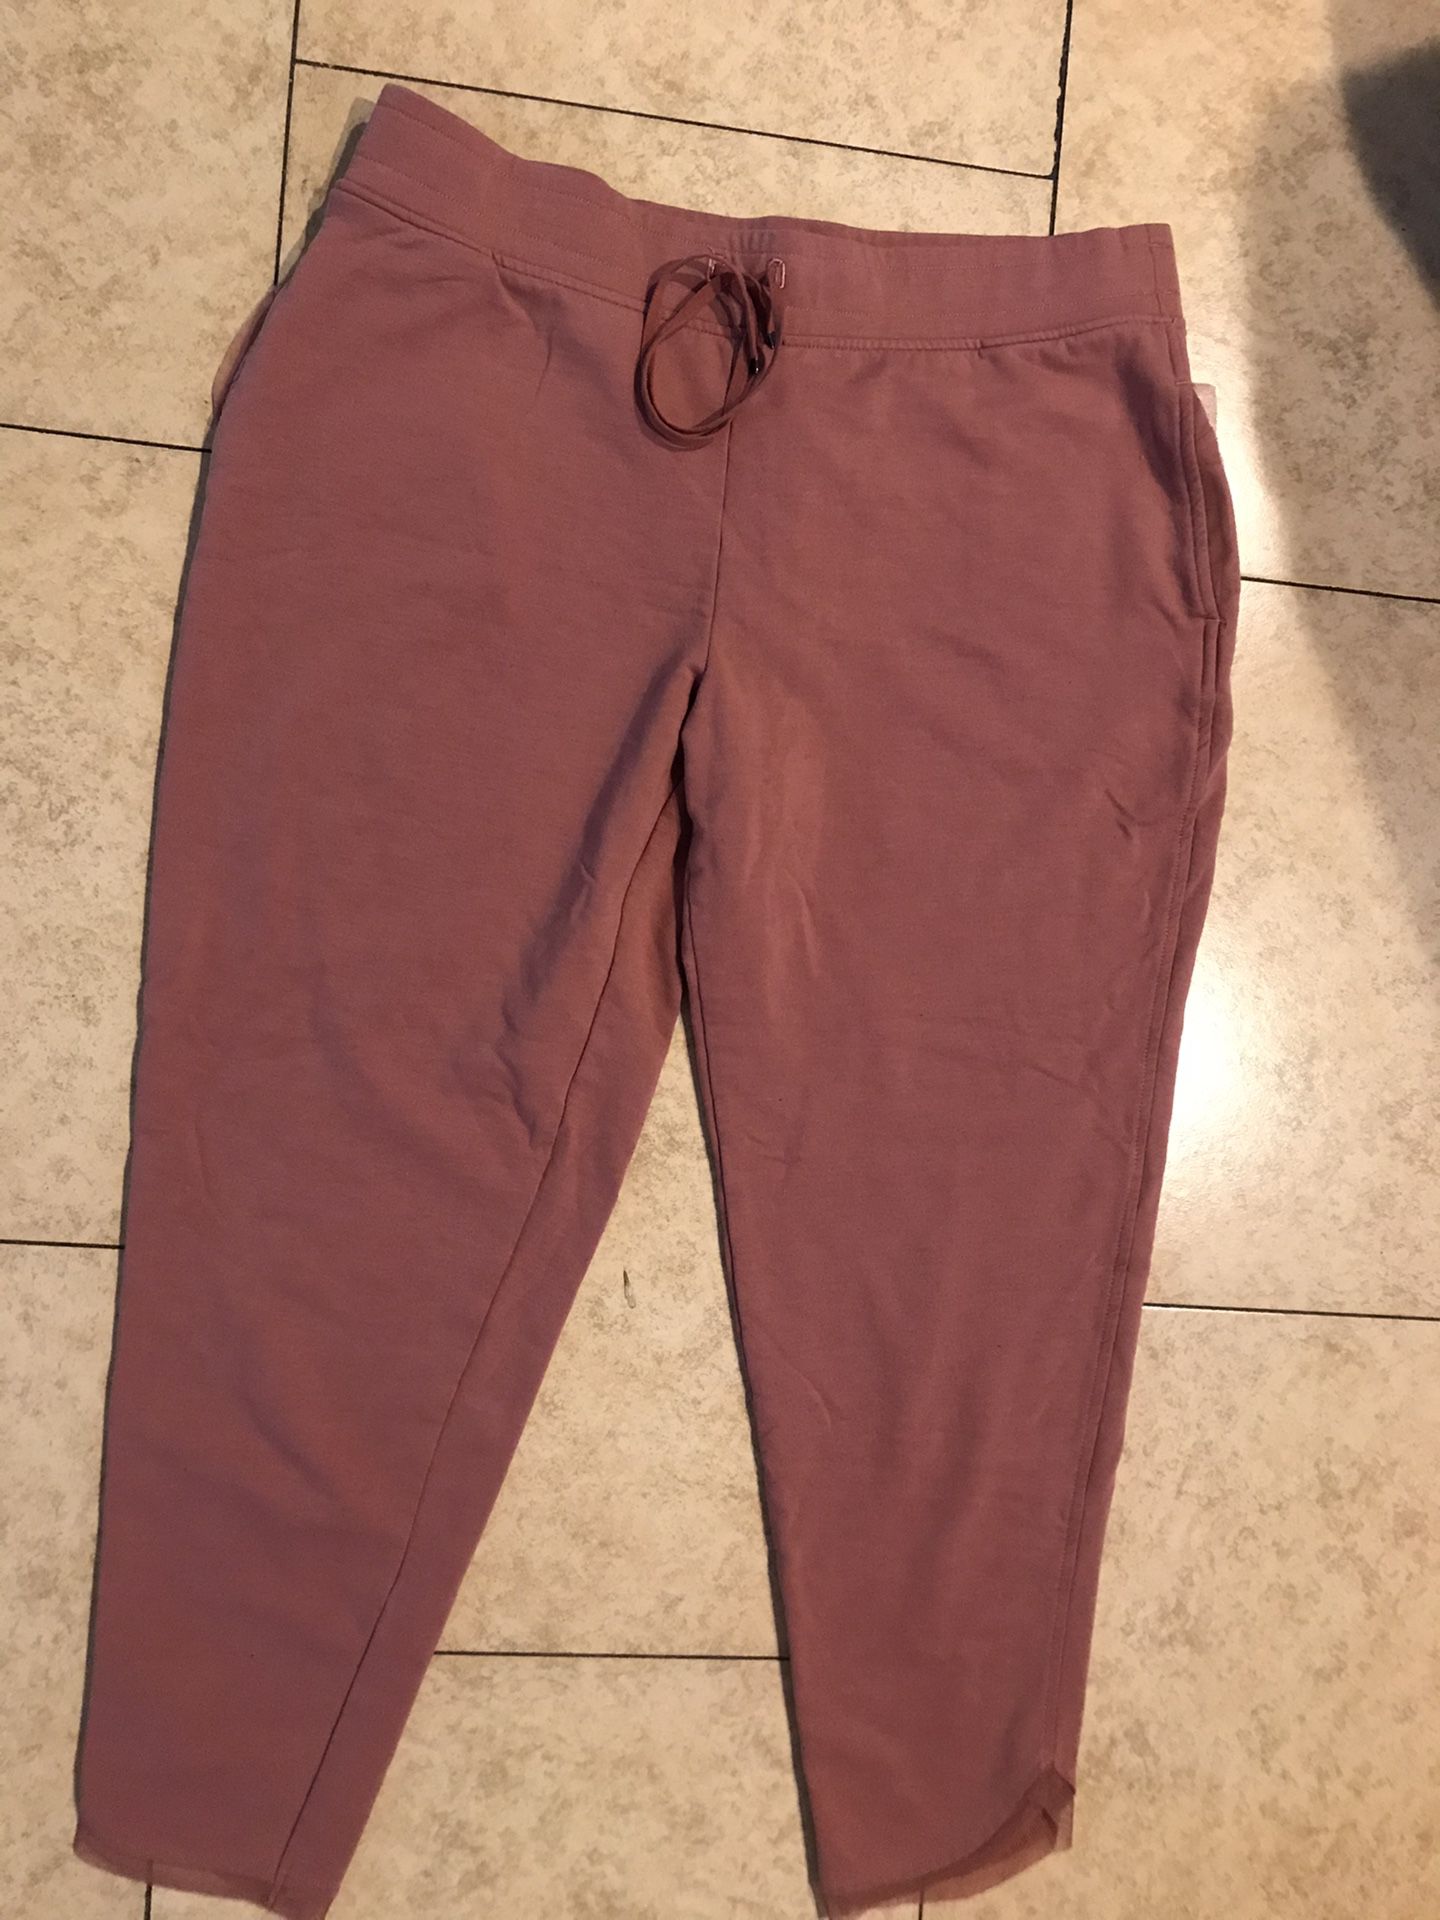 Pants Victoria’s Secret sizes large